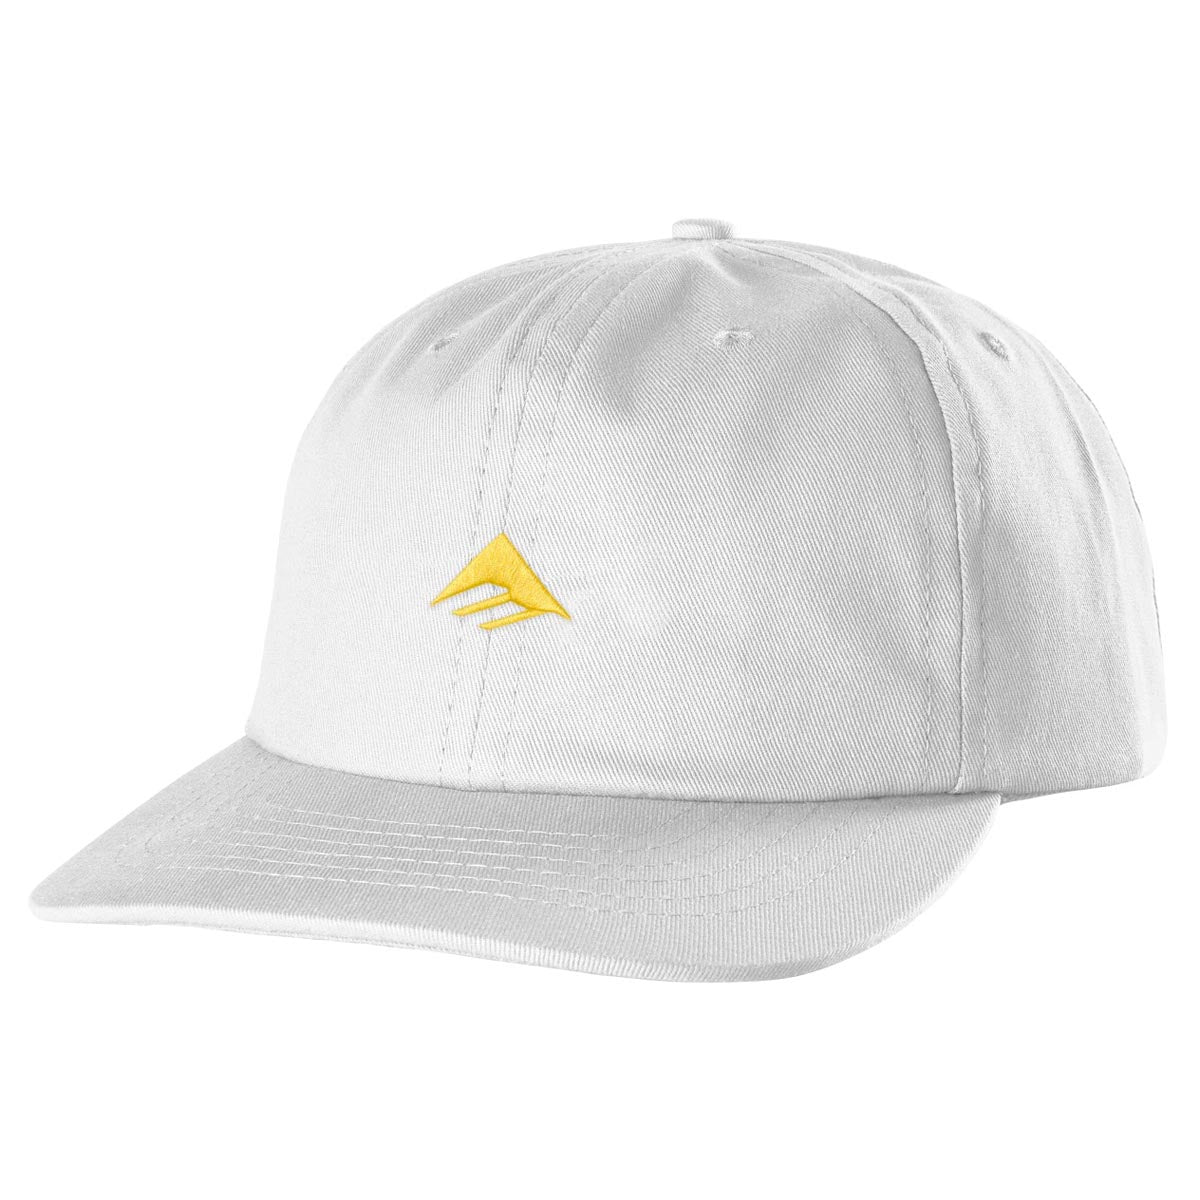 Emerica Micro Triangle Hat - White image 1